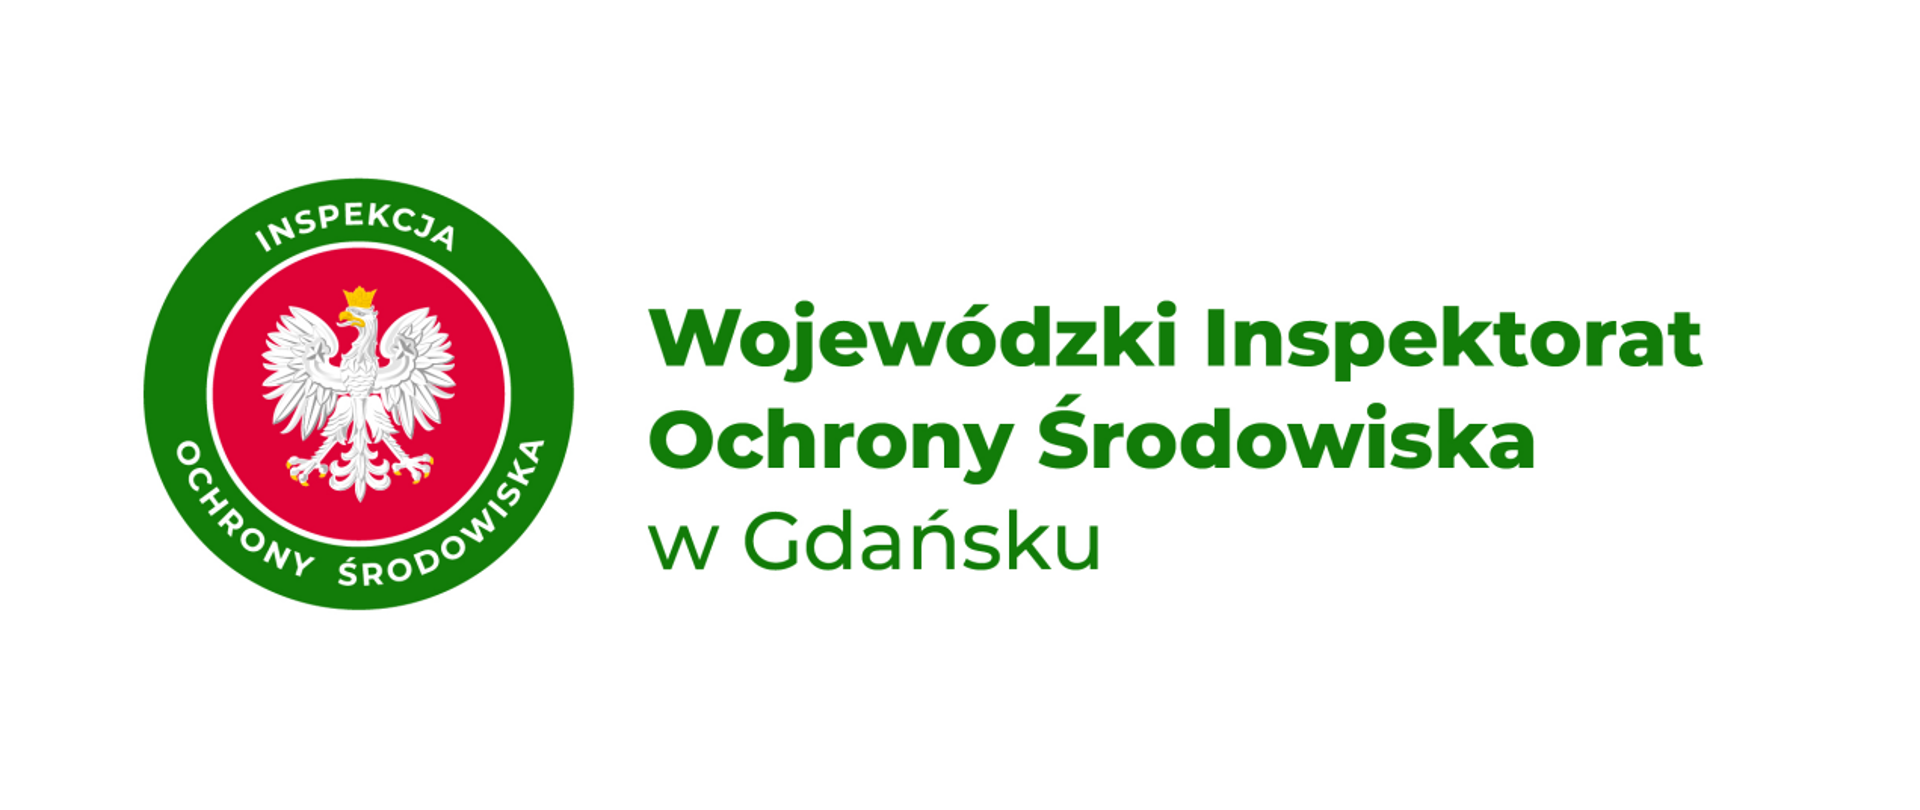 Logo Inspekcji Ochrony Środowiska z orłem w tle. Obok zielony napis Wojewódzki Inspektorat Ochrony Środowiska w Gdańsku.